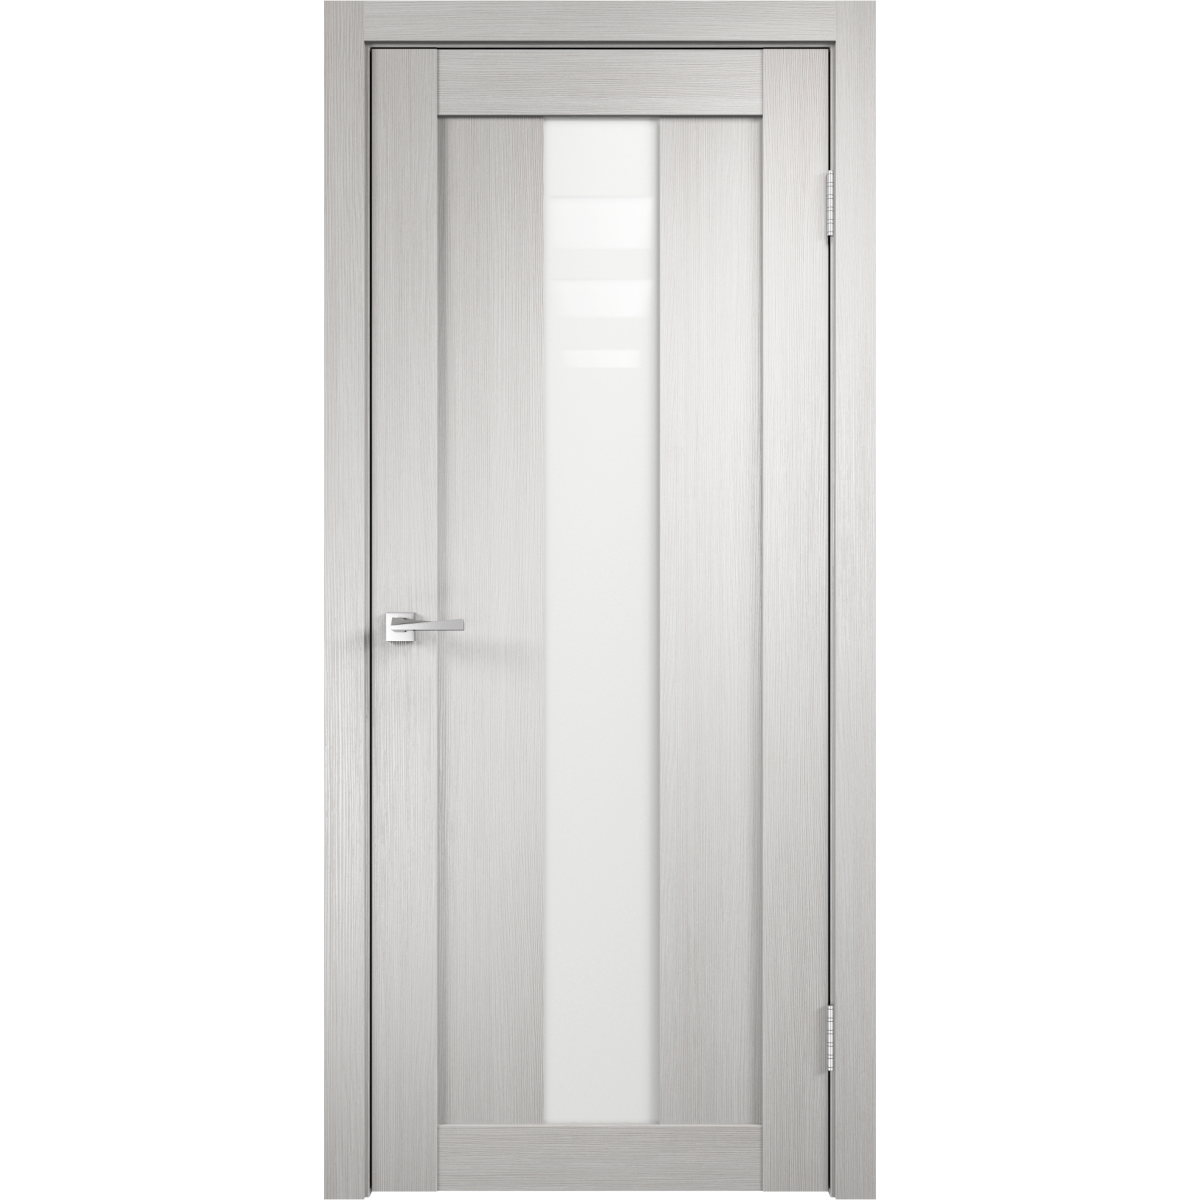 Дверь межкомнатная остеклённая Фортуна 60x200 см, ПВХ, цвет белый дуб